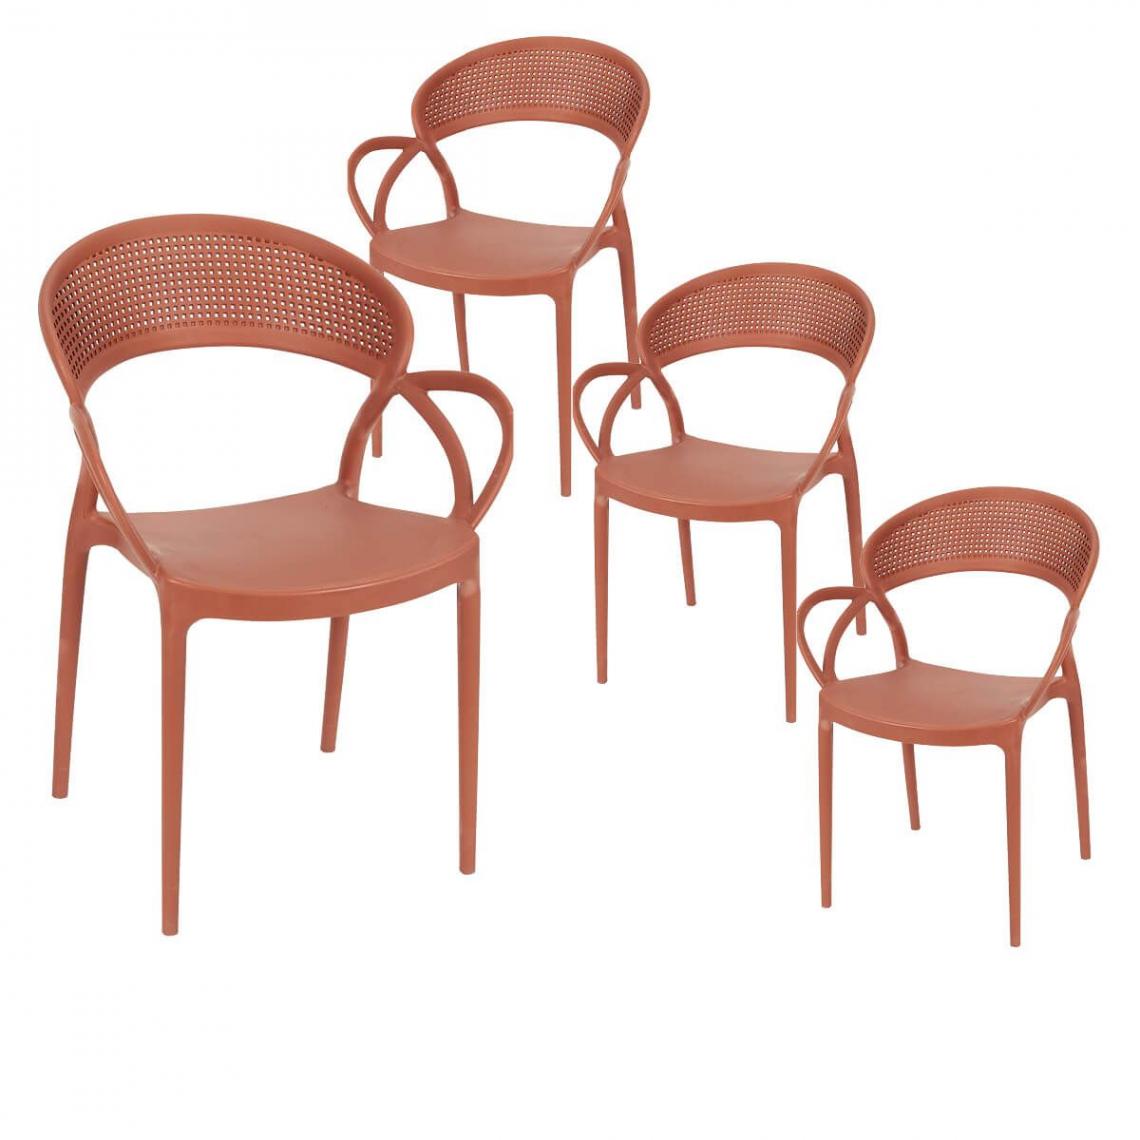 Altobuy - ATHENA - Lot de 4 Chaises de Jardin Plastique Terracotta - Chaises